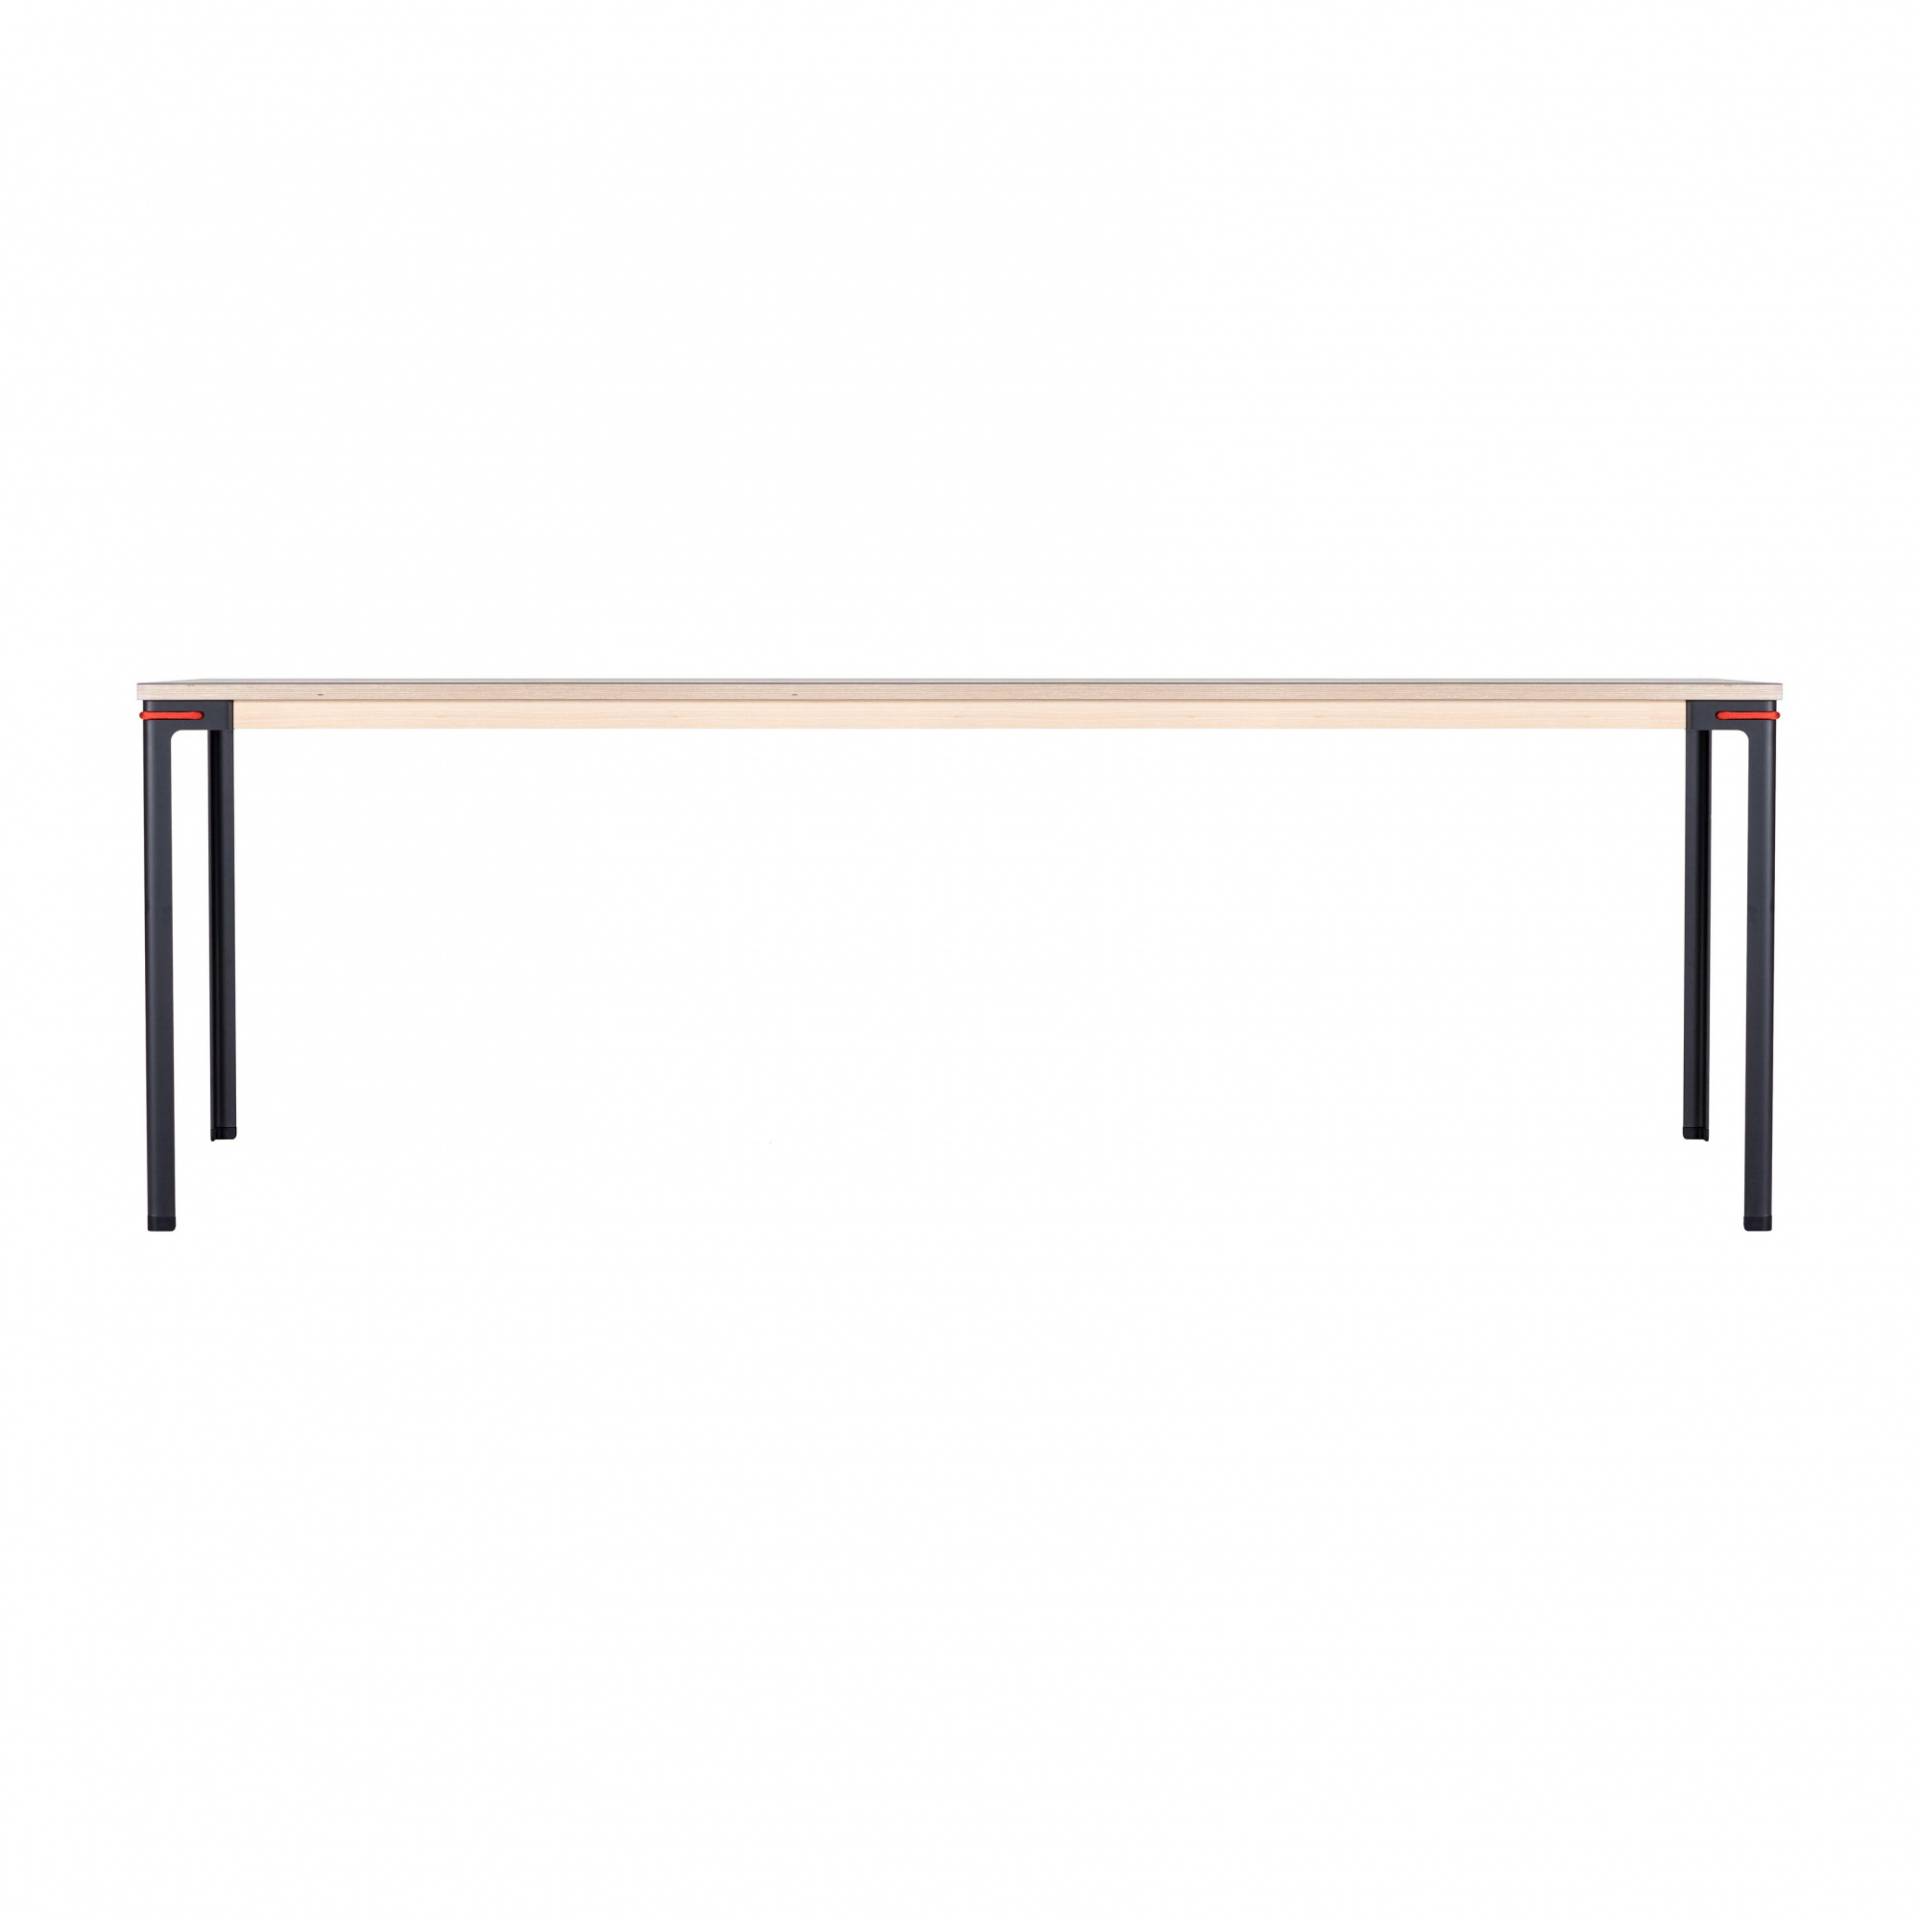 Moormann - Seiltänzer Tisch rechteckig 90x220cm - Linoleum schwarz/rotes Seil/Zarge esche/H 75cm/Gestell Stahl nitriert von Moormann